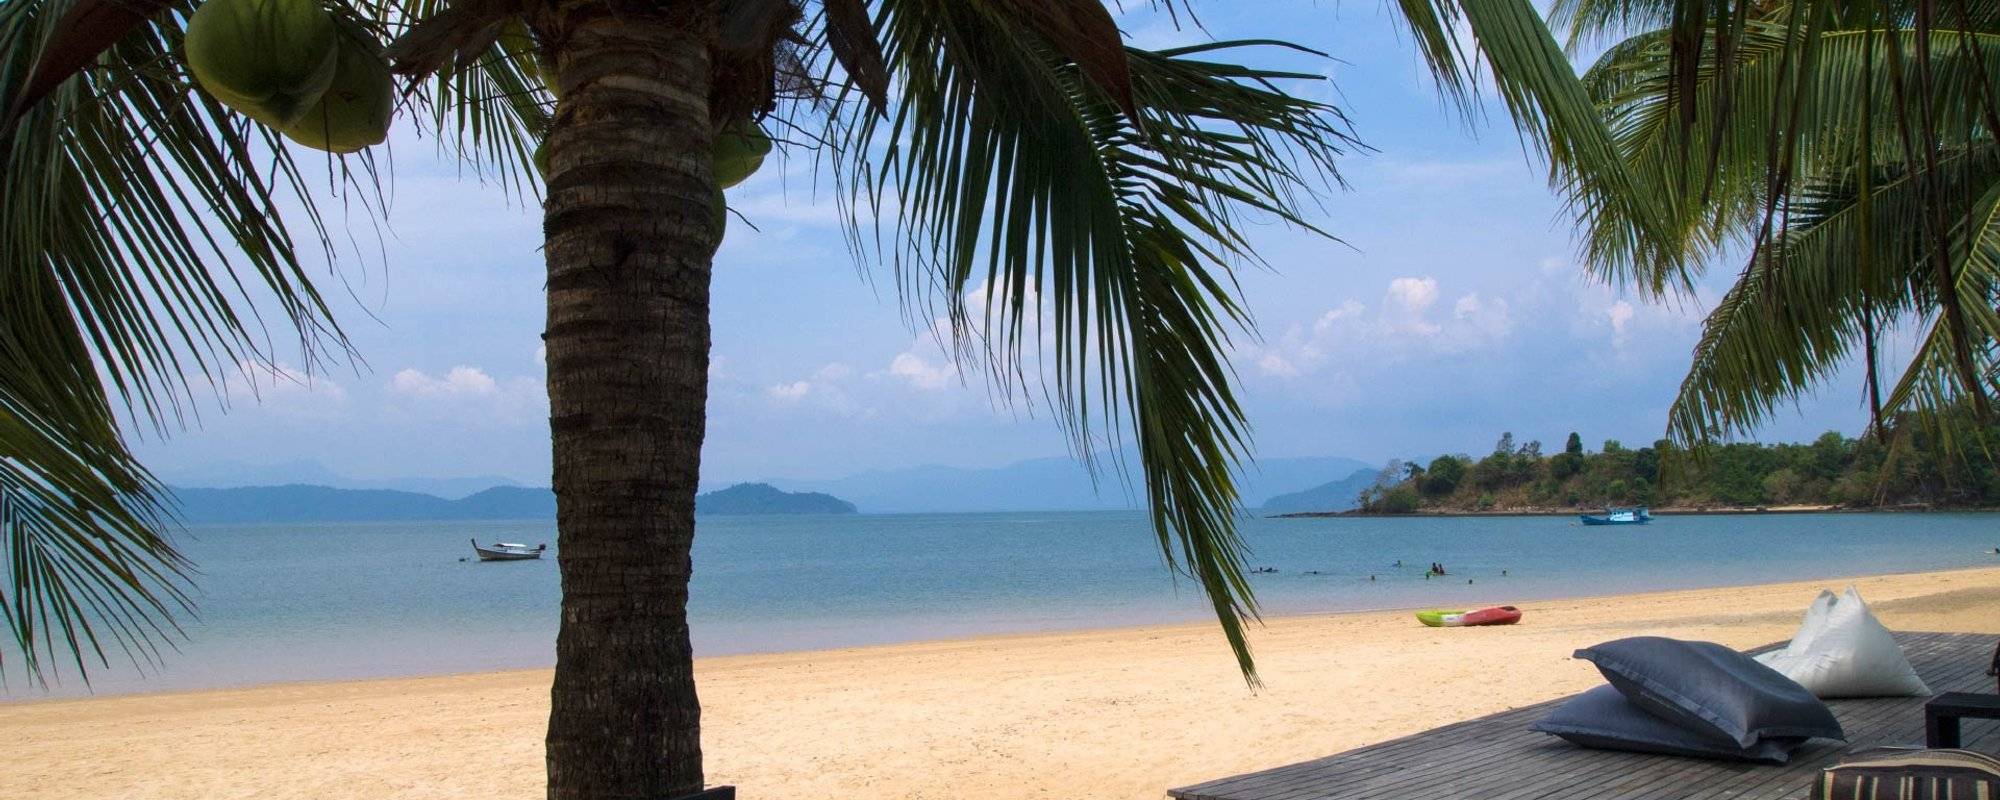 Koh Phayam - I'm missing this lovely island